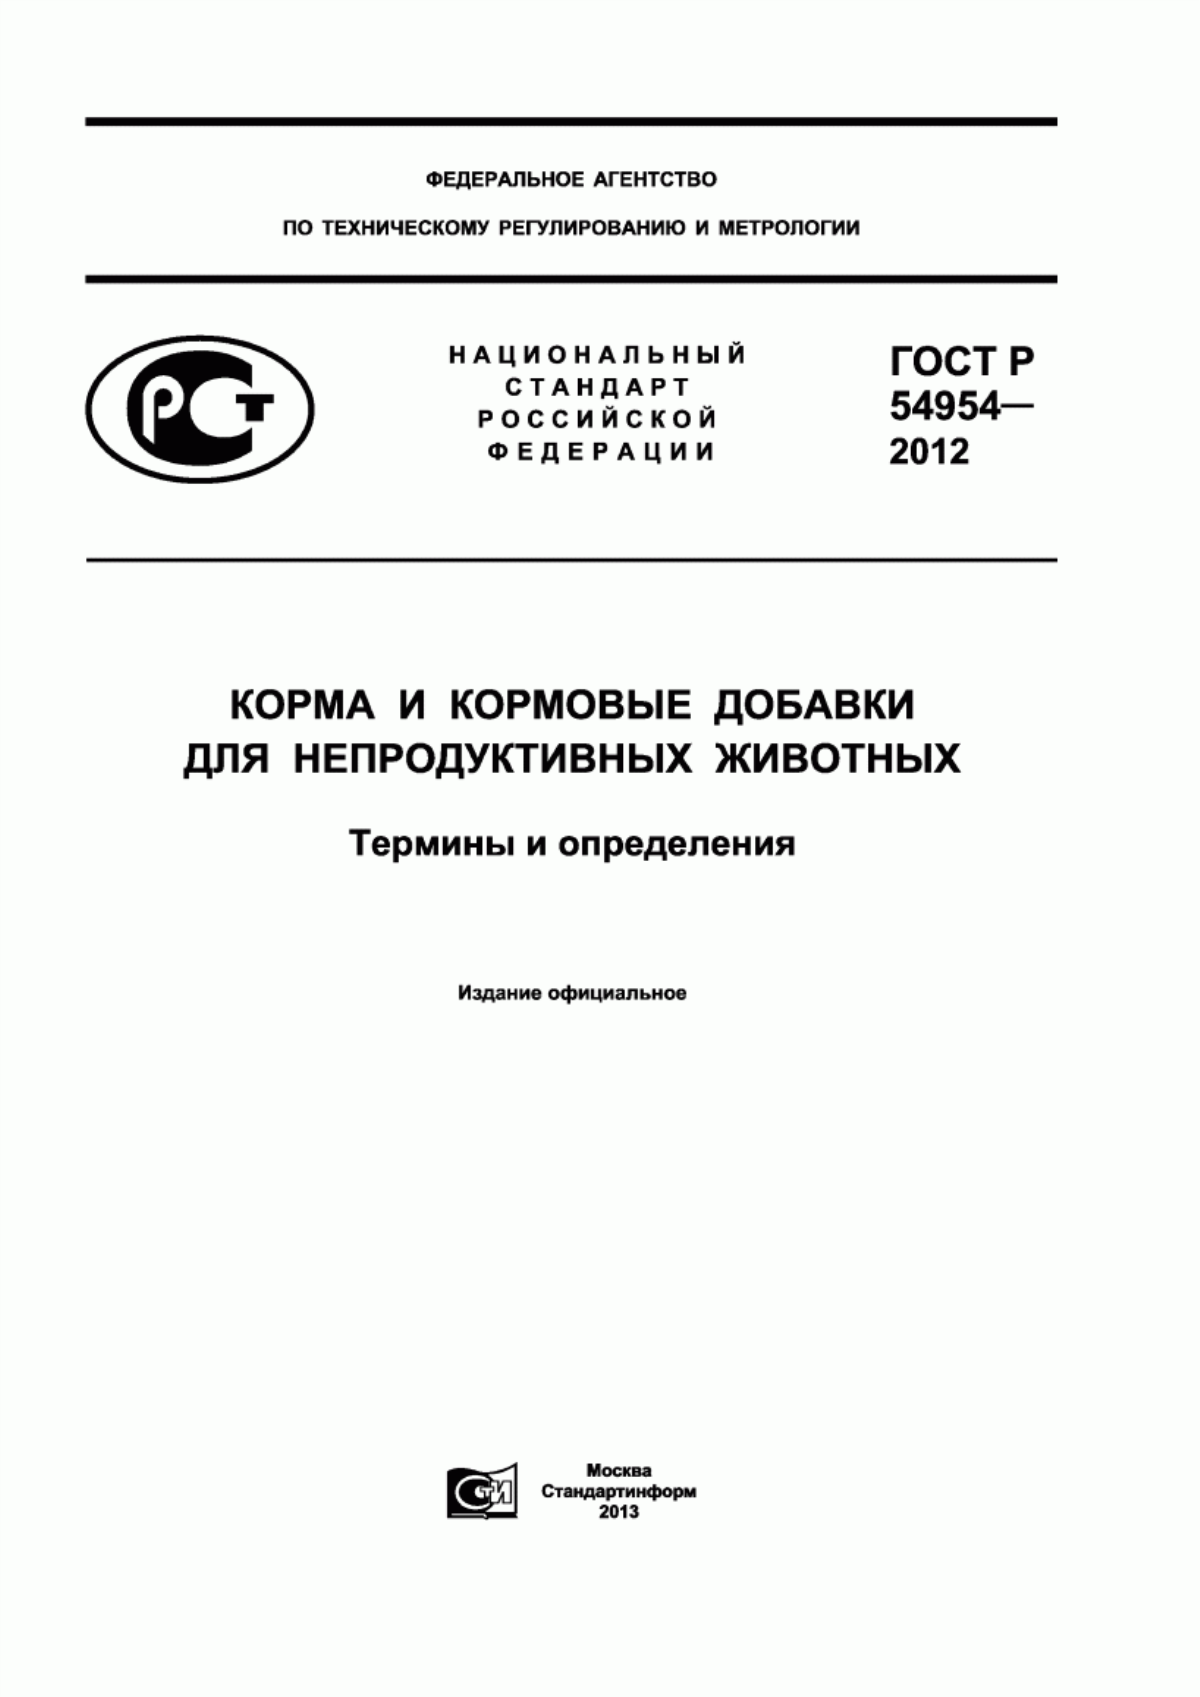 ГОСТ Р 54954-2012 Корма и кормовые добавки для непродуктивных животных. Термины и определения